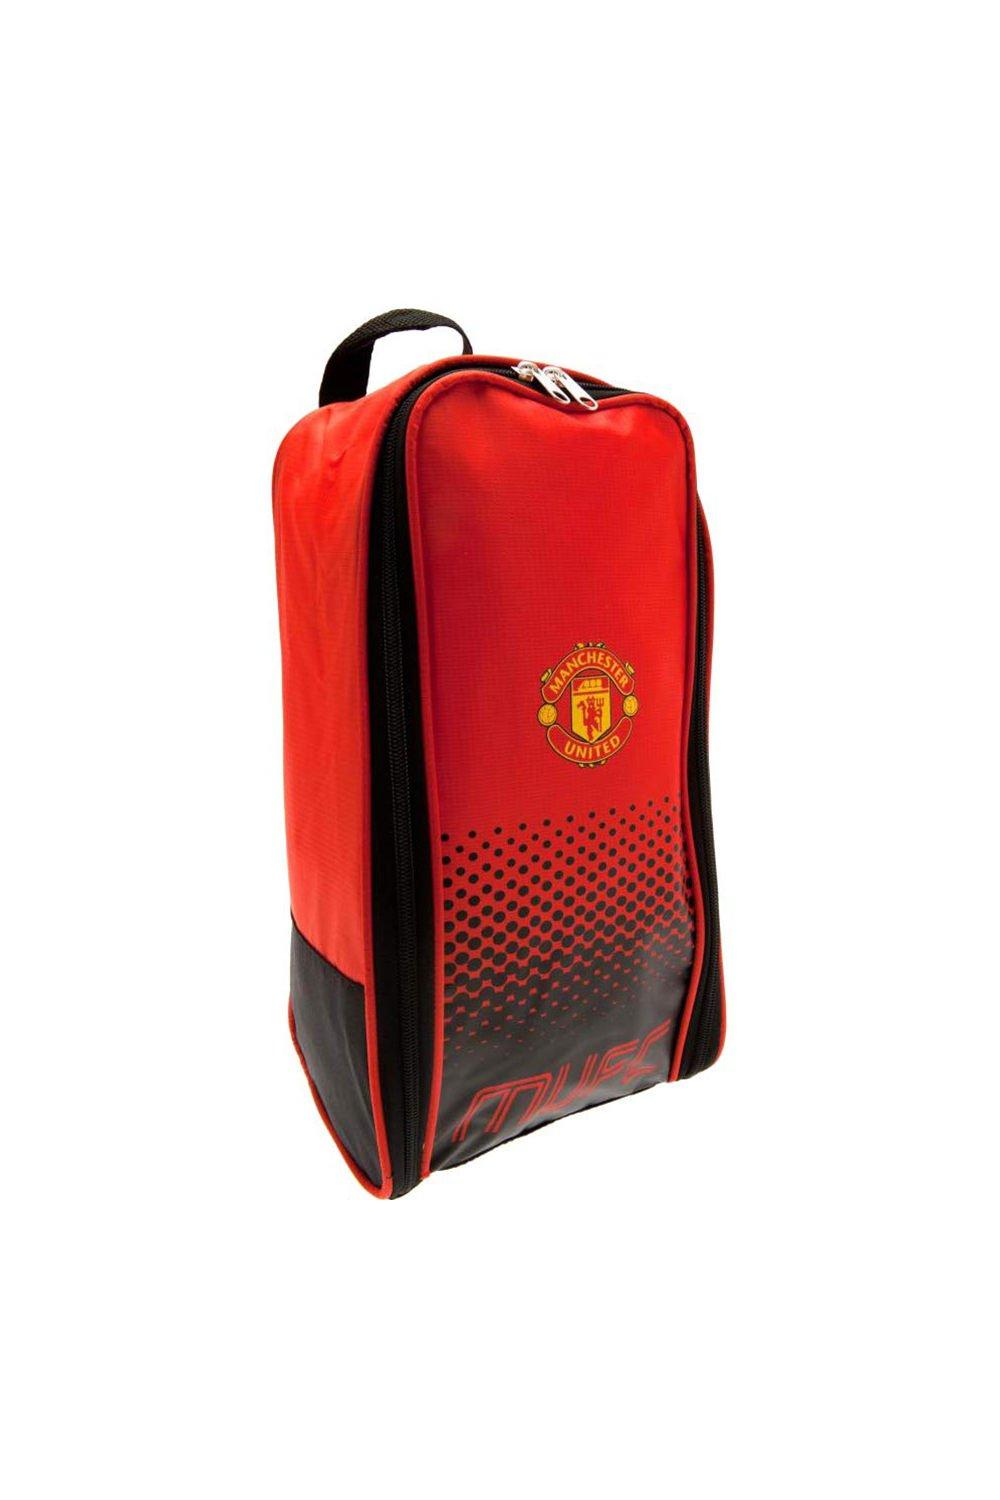 Официальная сумка для обуви Football Fade Design Manchester United FC, красный гетры манчестер юнайтед 2021 2022 домашние